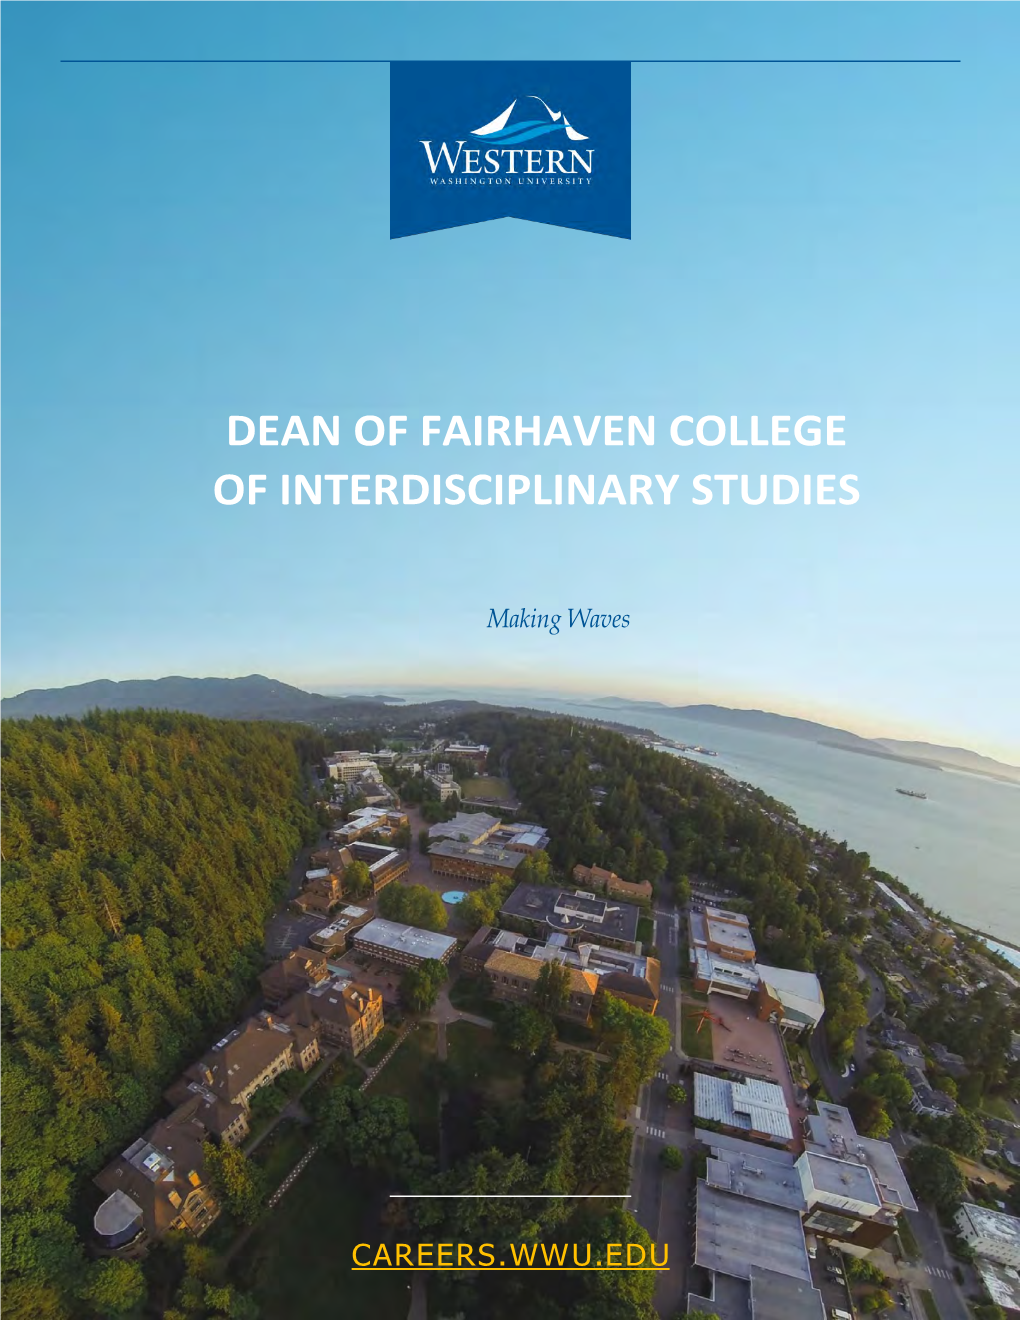 Dean of Fairhaven College of Interdisciplinary Studies